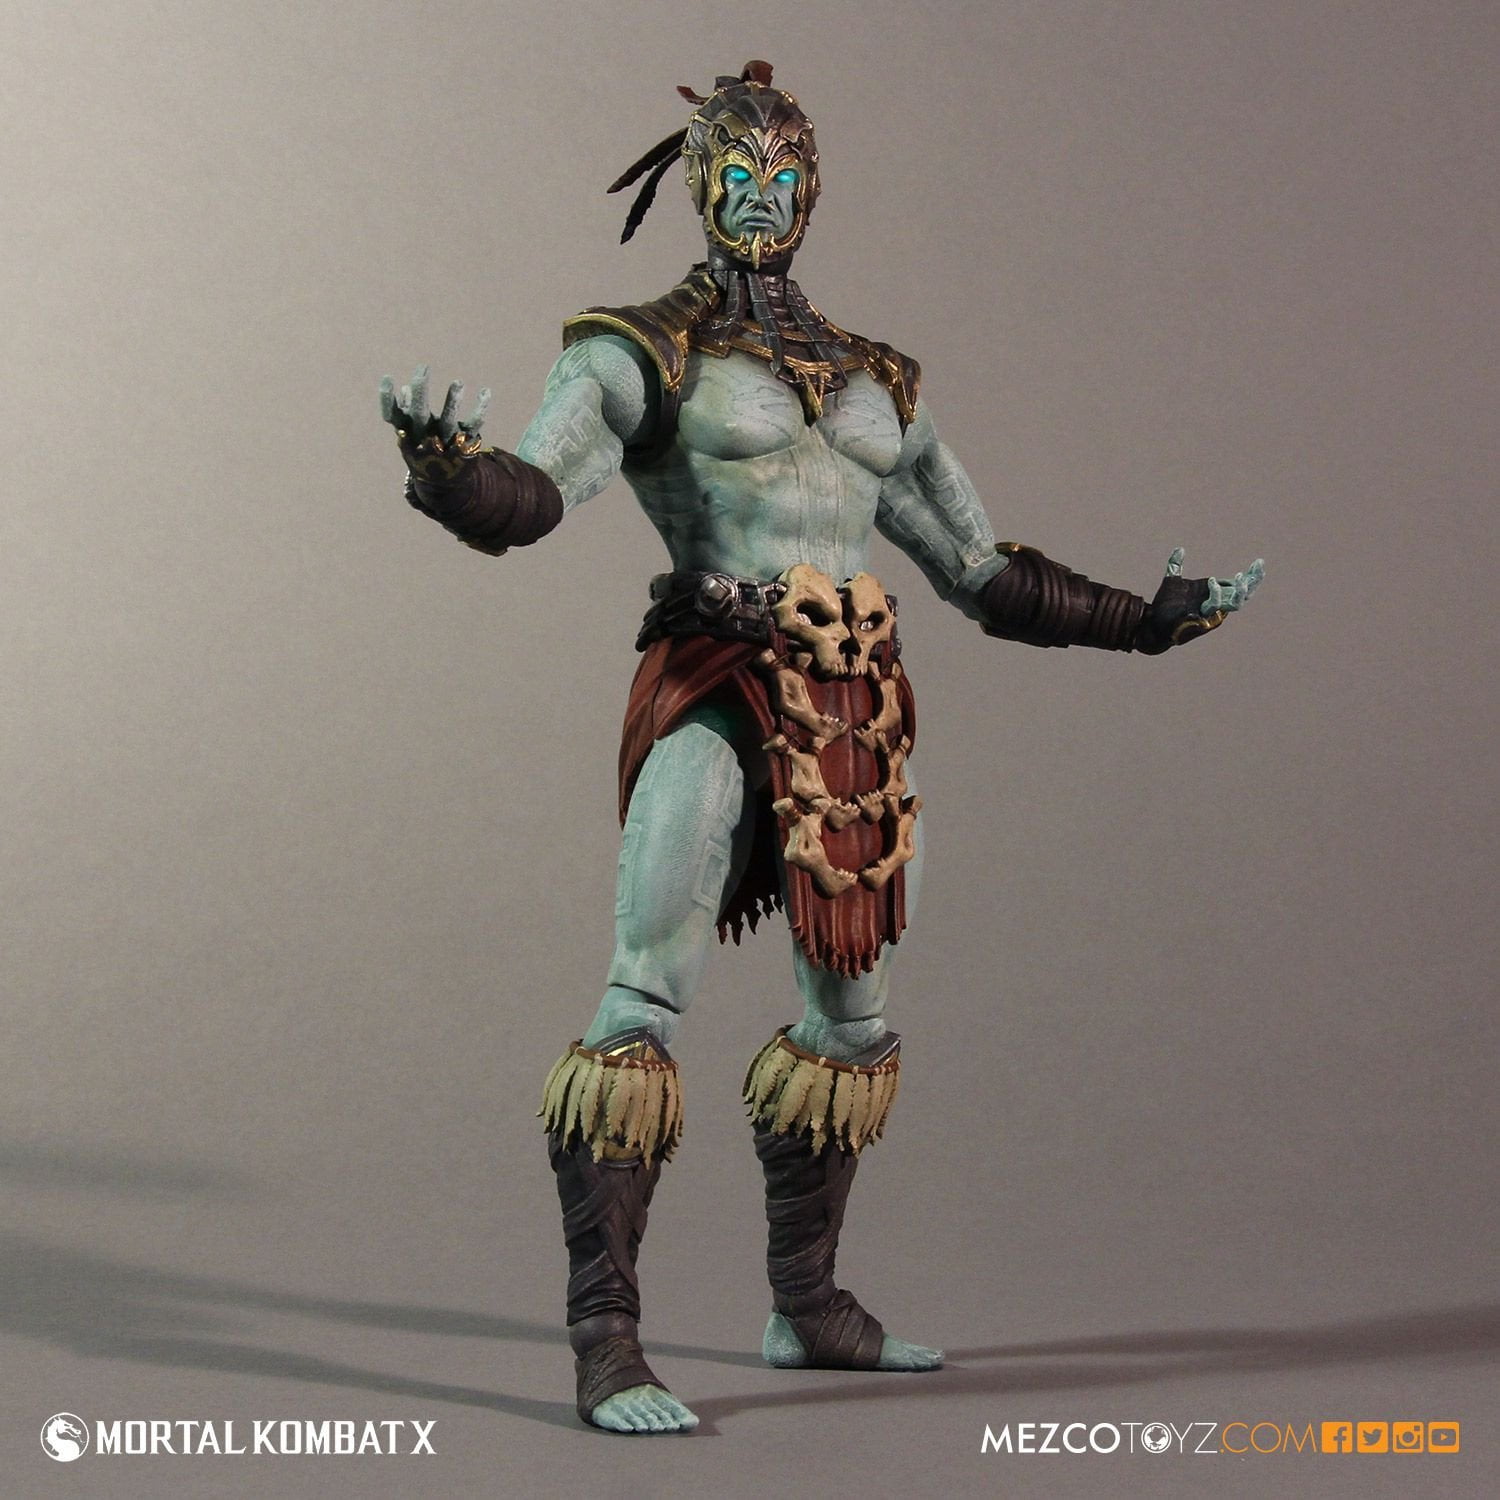 Mortal Kombat X Series 2 Action Figure Kotal Kahn 15 Cm Mezco Toys Figures for sale online 